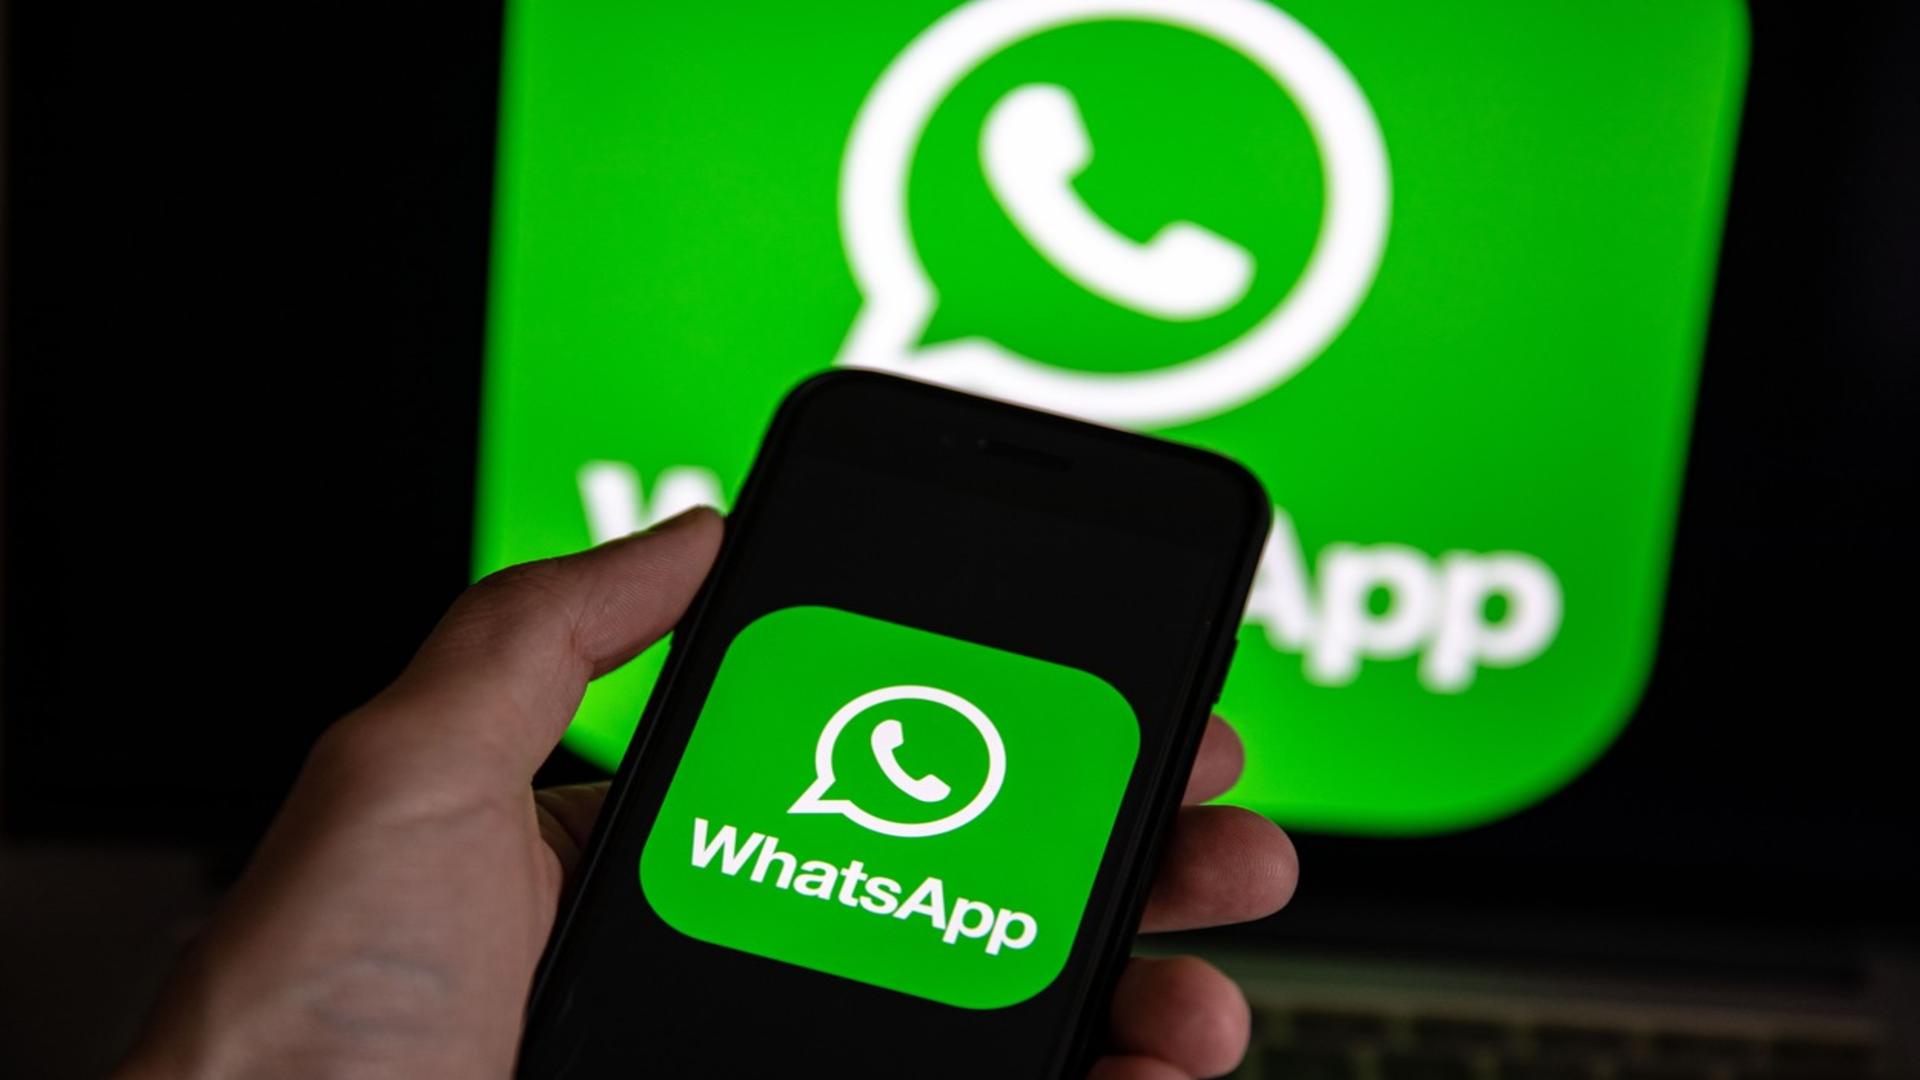 Telefoanele pe care WhatsApp nu va mai funcționa, de la 1 ianuarie / Foto: Profi Media